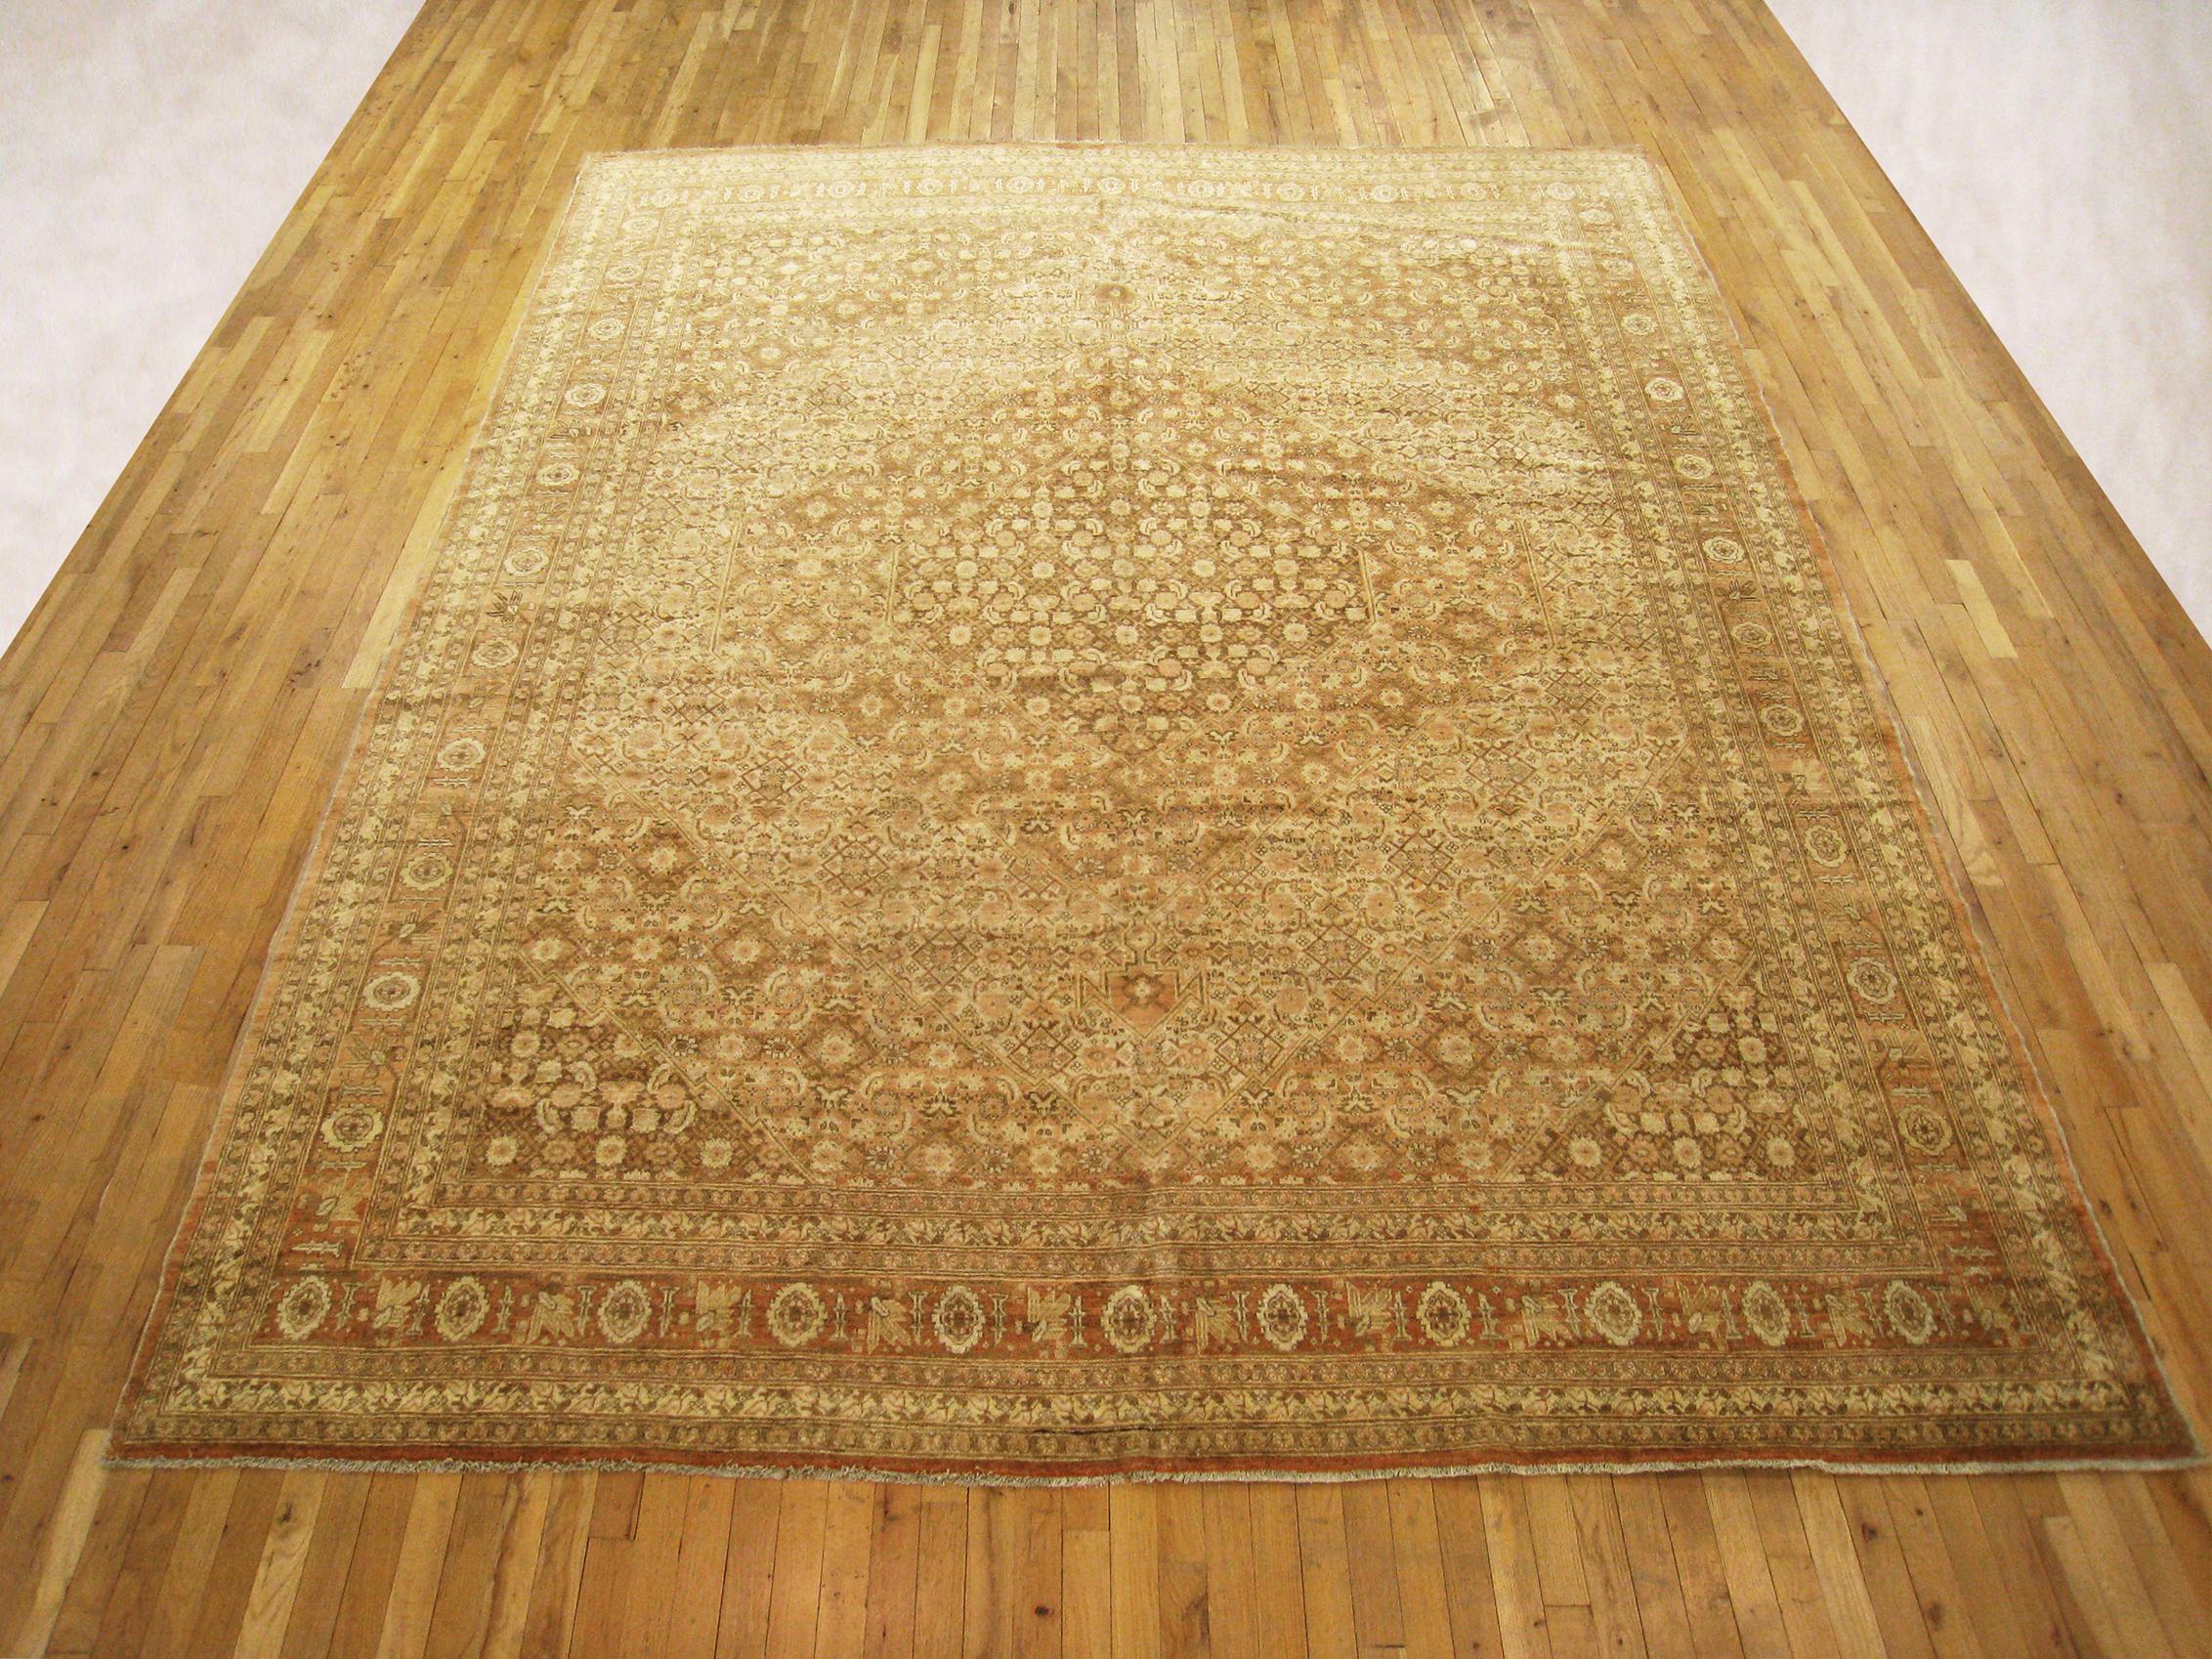 Antique Persian Tabriz  Oriental Carpet, circa 1910, Room Sized

An antique Persian Tabriz oriental carpet, circa 1910. Size: 12'0